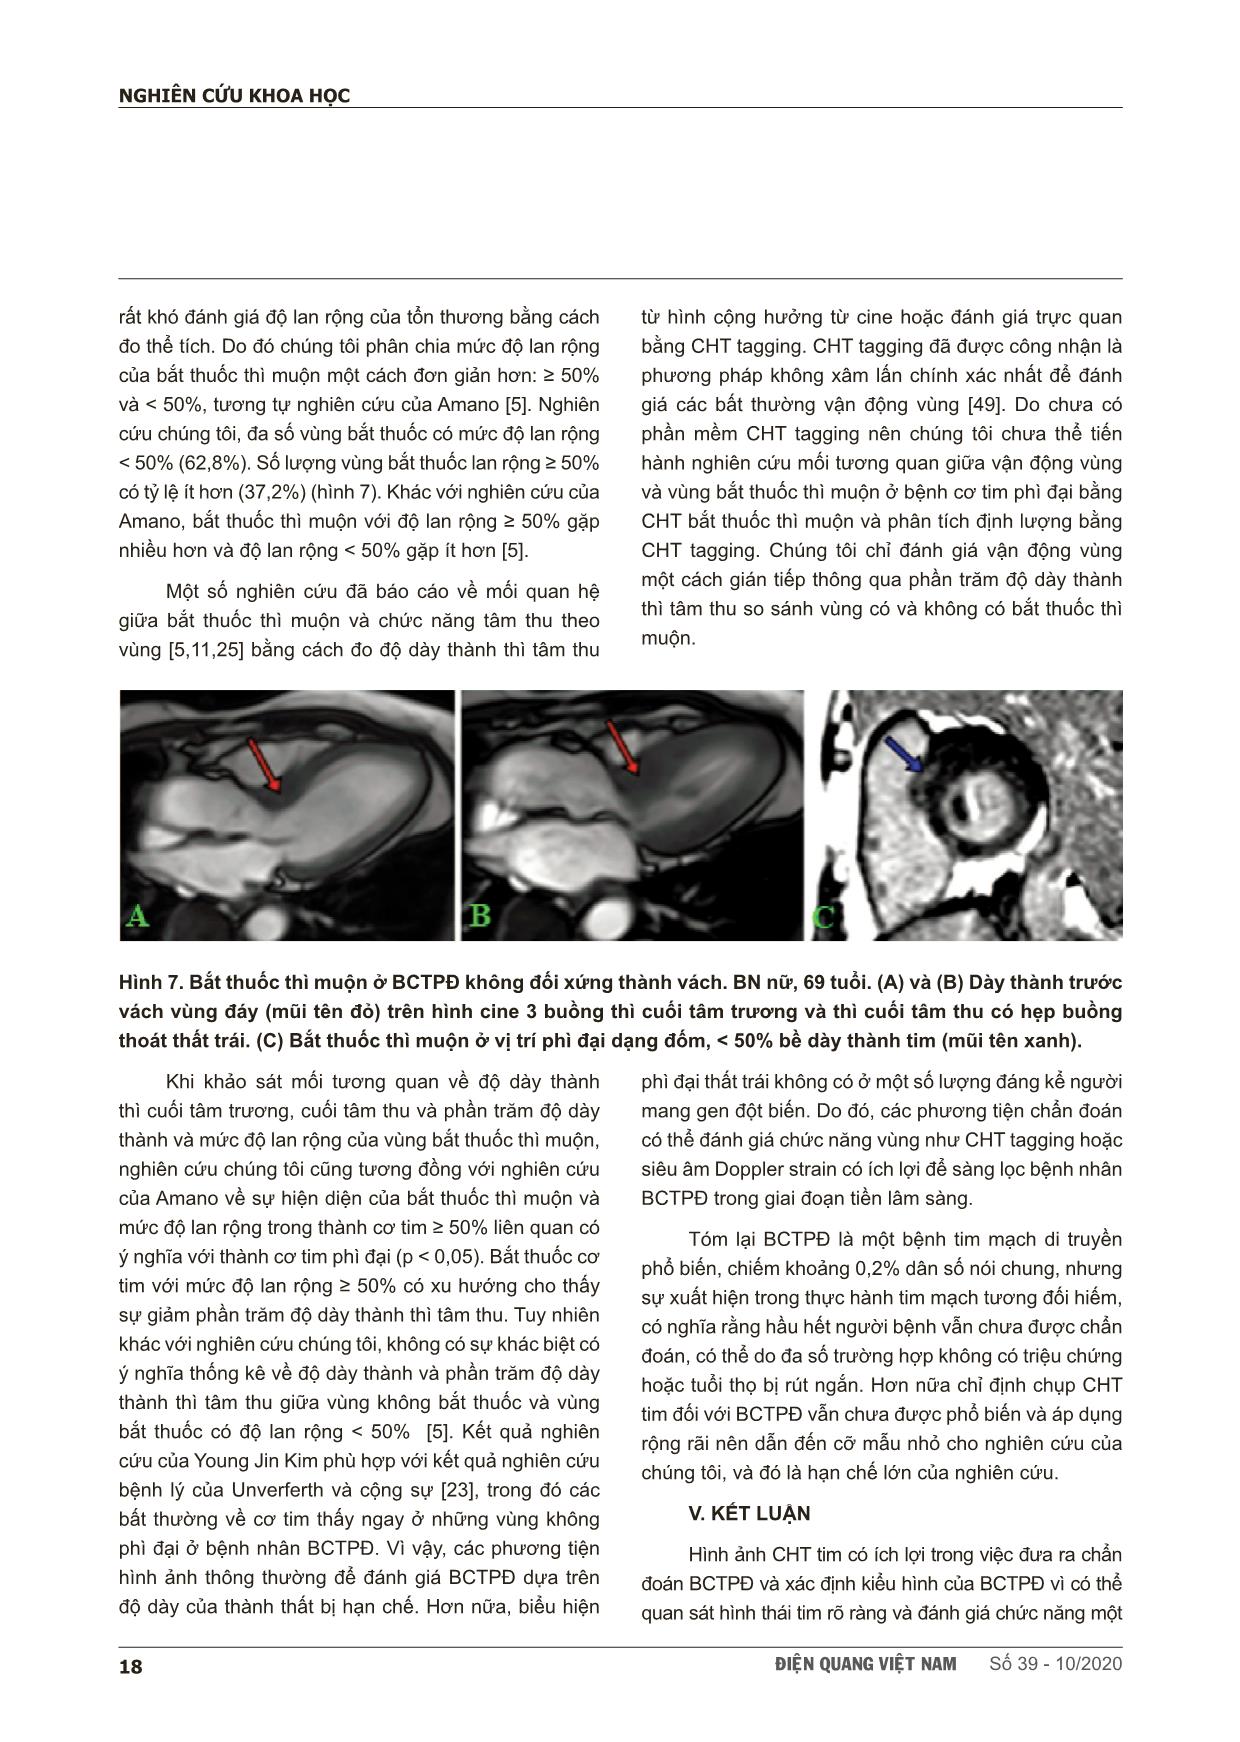 Khảo sát đặc điểm hình ảnh bắt thuốc thì muộn trên cộng hưởng từ của bệnh cơ tim phì đại trang 8